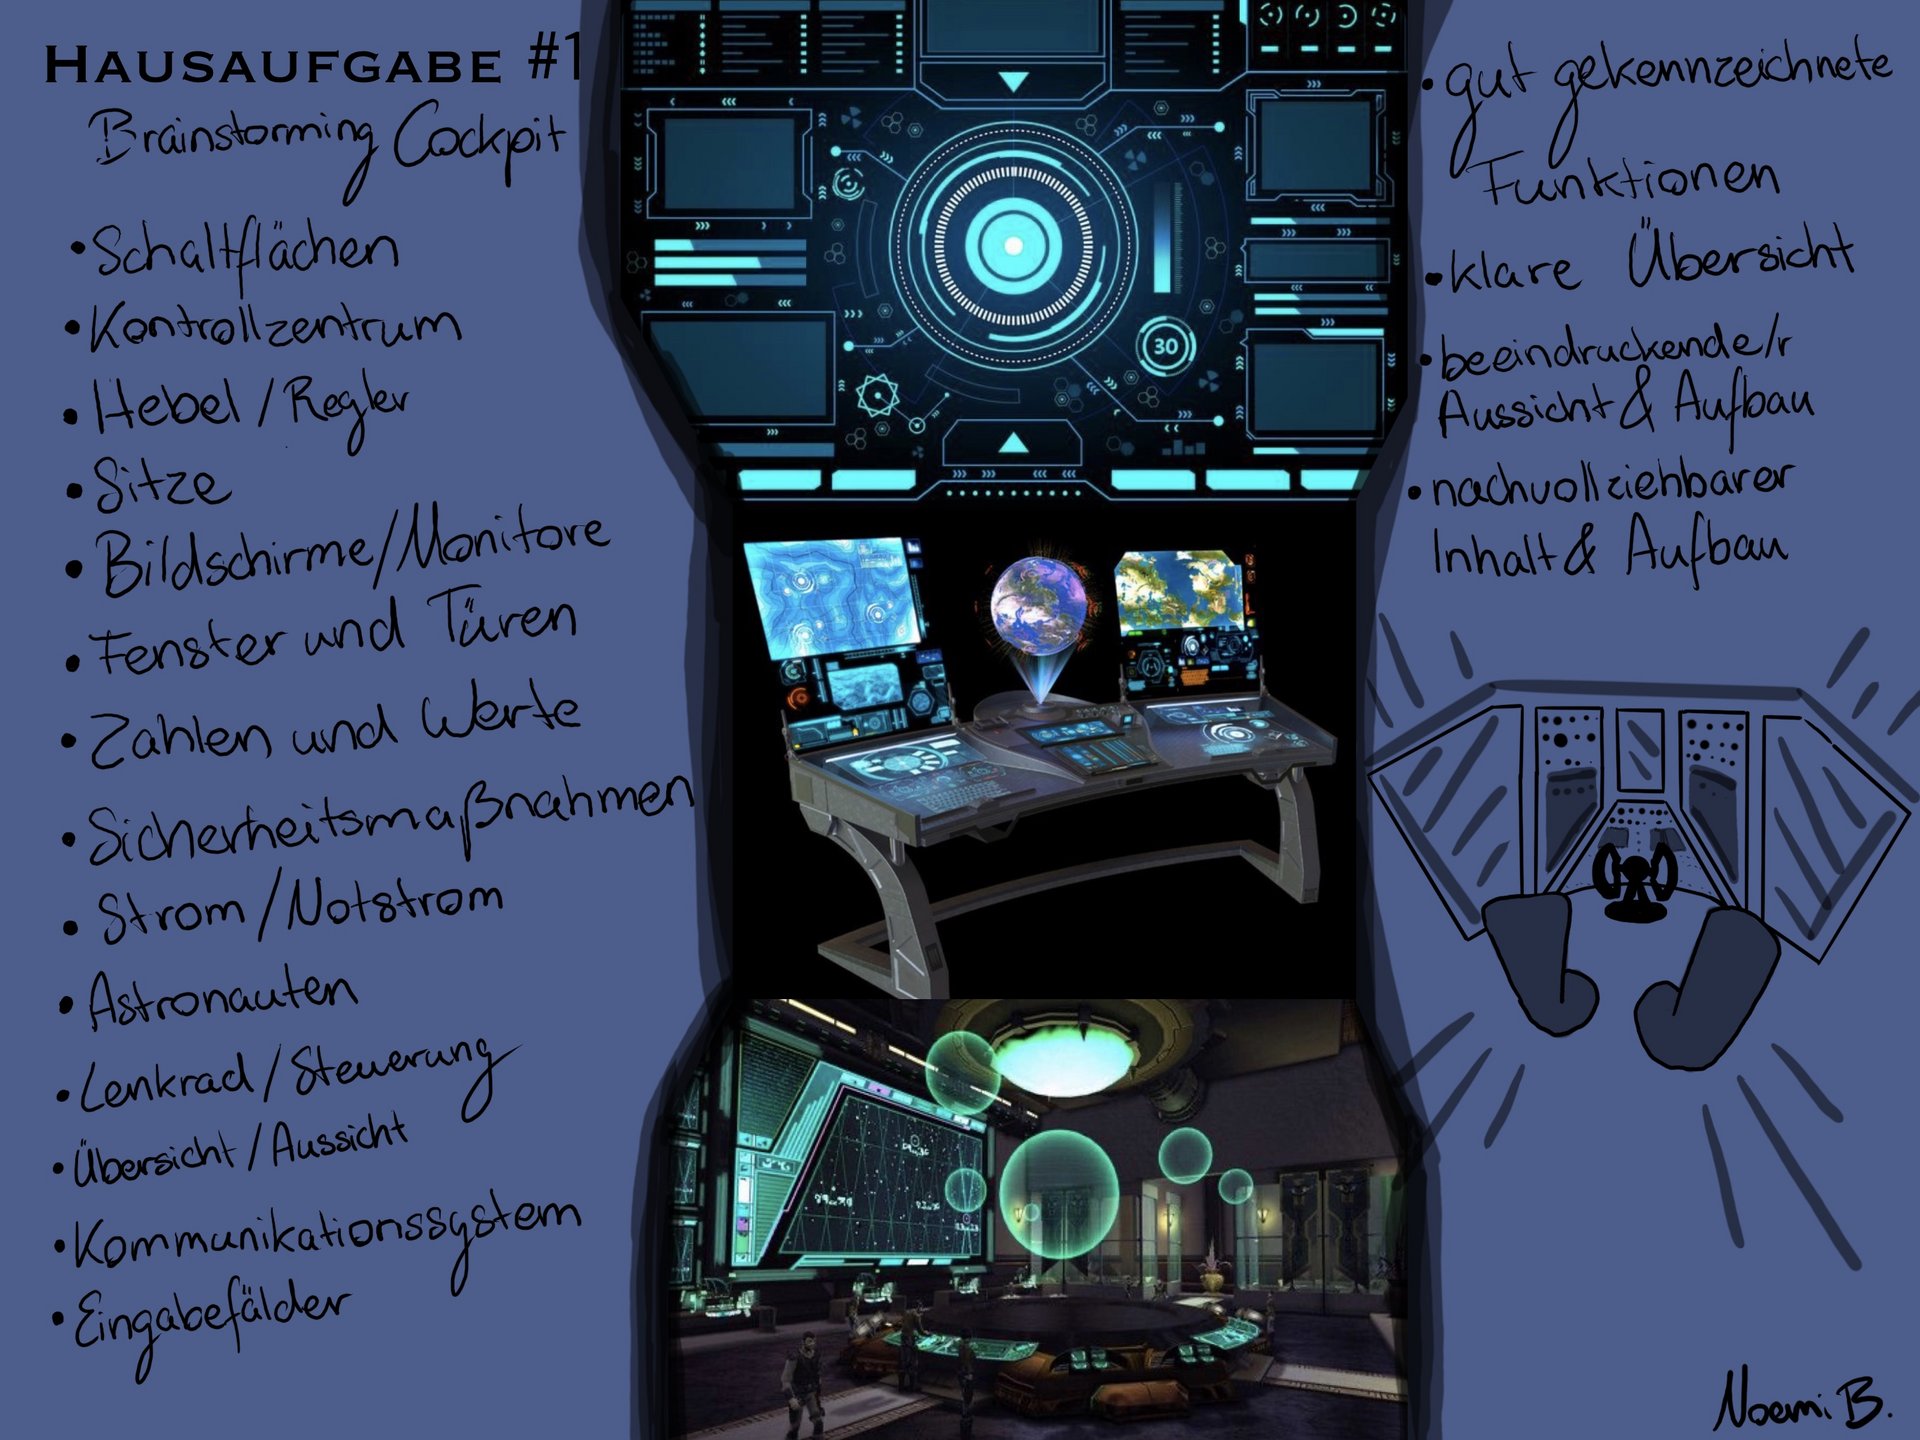 Ein Moodboard zum Entwurf des Cockpits. In der Mitte sind exemplarische Bilder, links und rechts kurze Notizen.